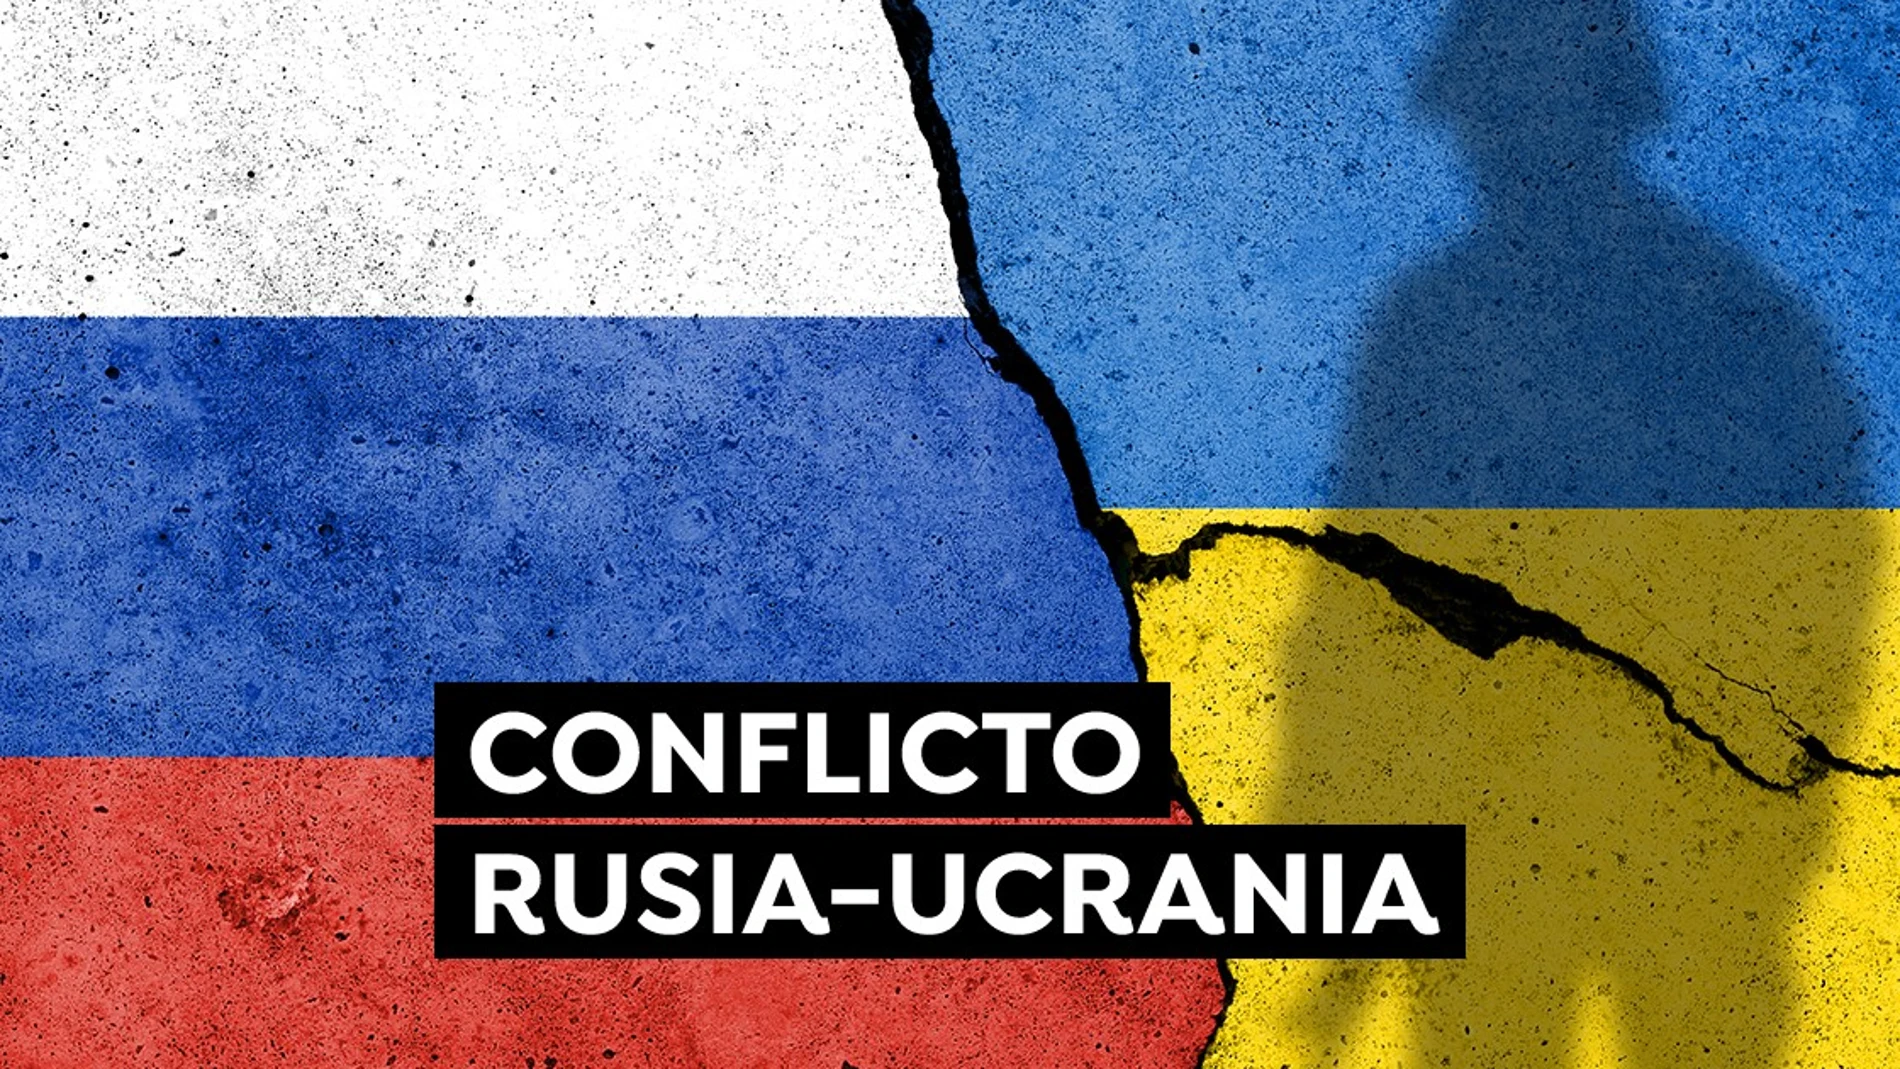 Conflicto Rusia- Ucrania Última hora: Reino Unido también acusa a Rusia del ciberataque contra Ucrania